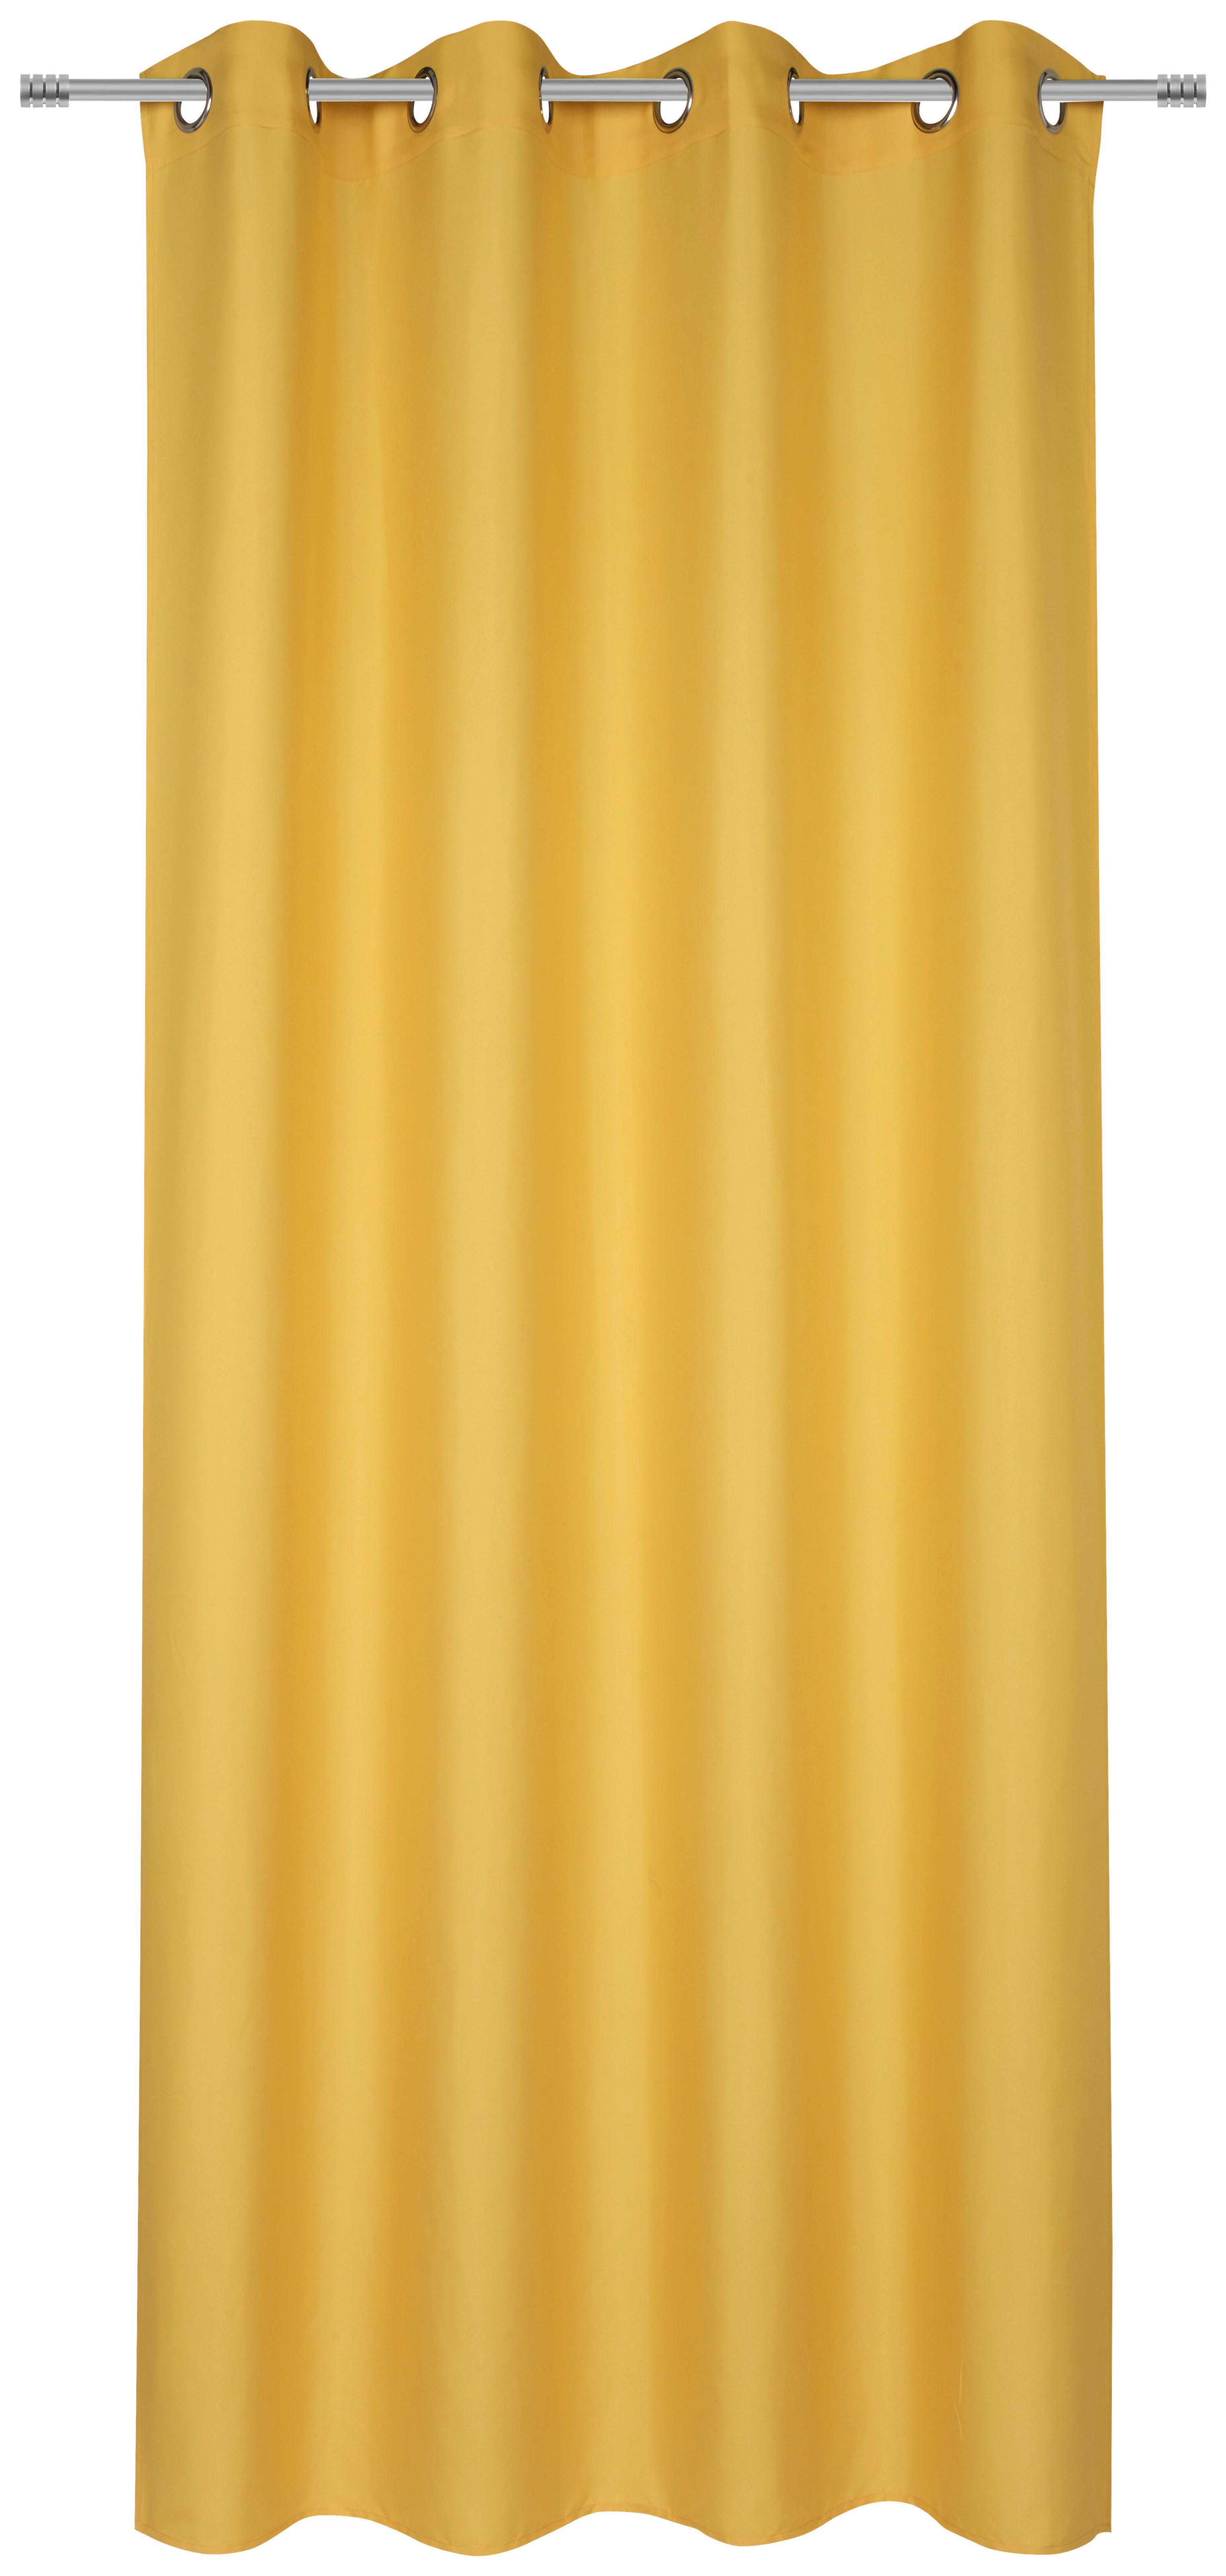 Závěs S Kroužky Abby, 140/235 Cm - žlutá, Konvenční, textil (140/235cm) - Modern Living